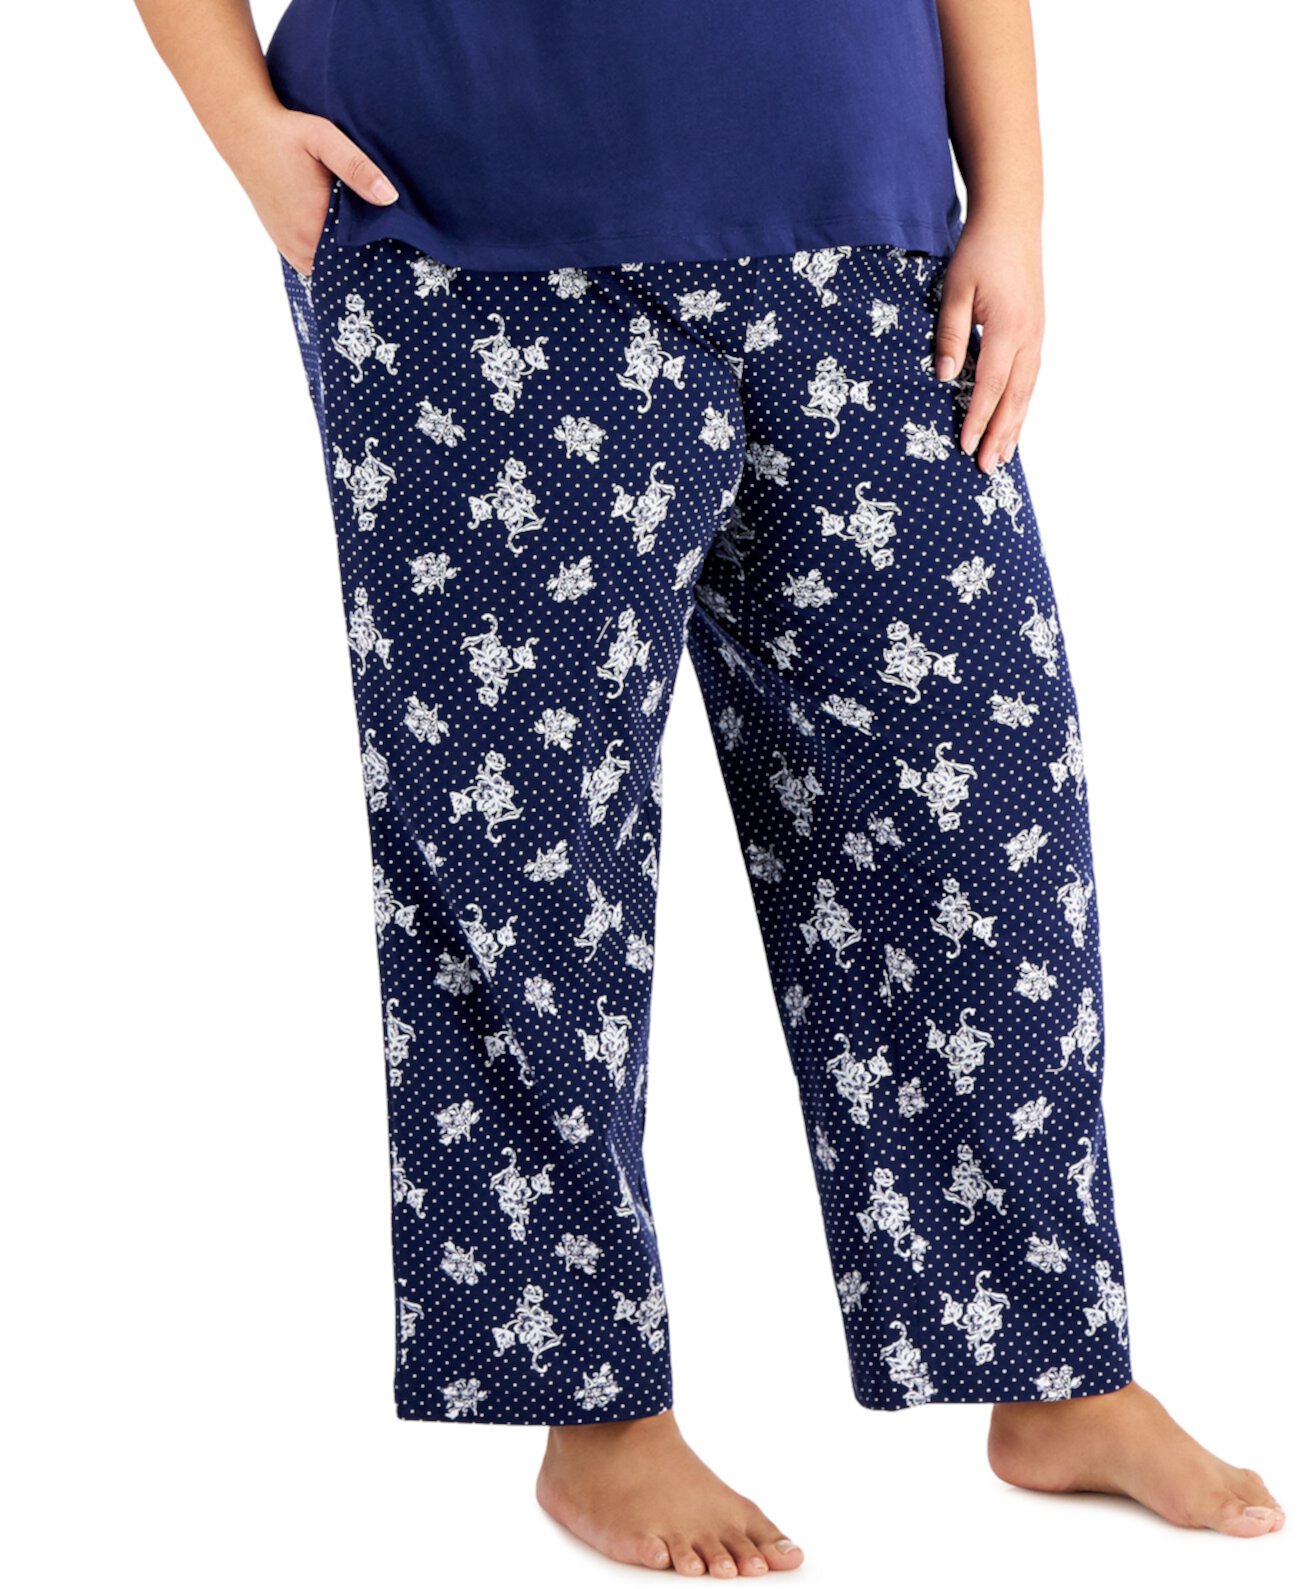 Хлопковые пижамные брюки больших размеров, созданные для Macy's Charter Club